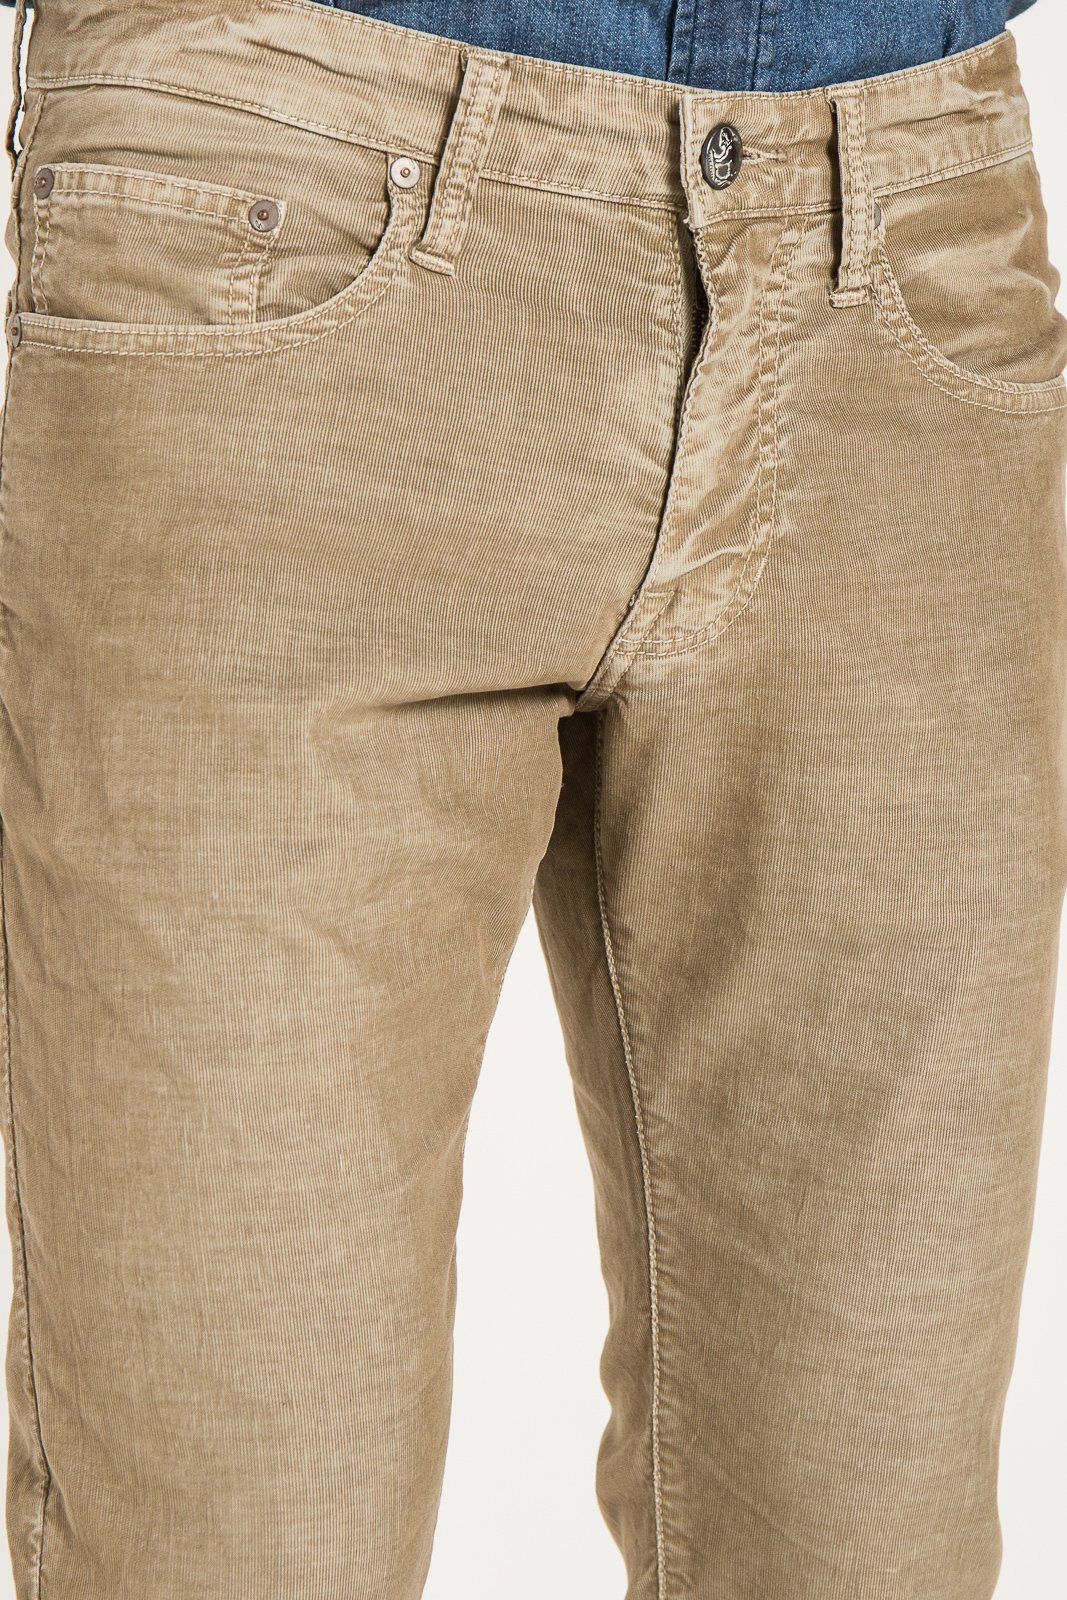 BARFLY SLIM IN Jeans | MERINO Stitch\'s STITCHS – JEANS JEANS CORDUROY